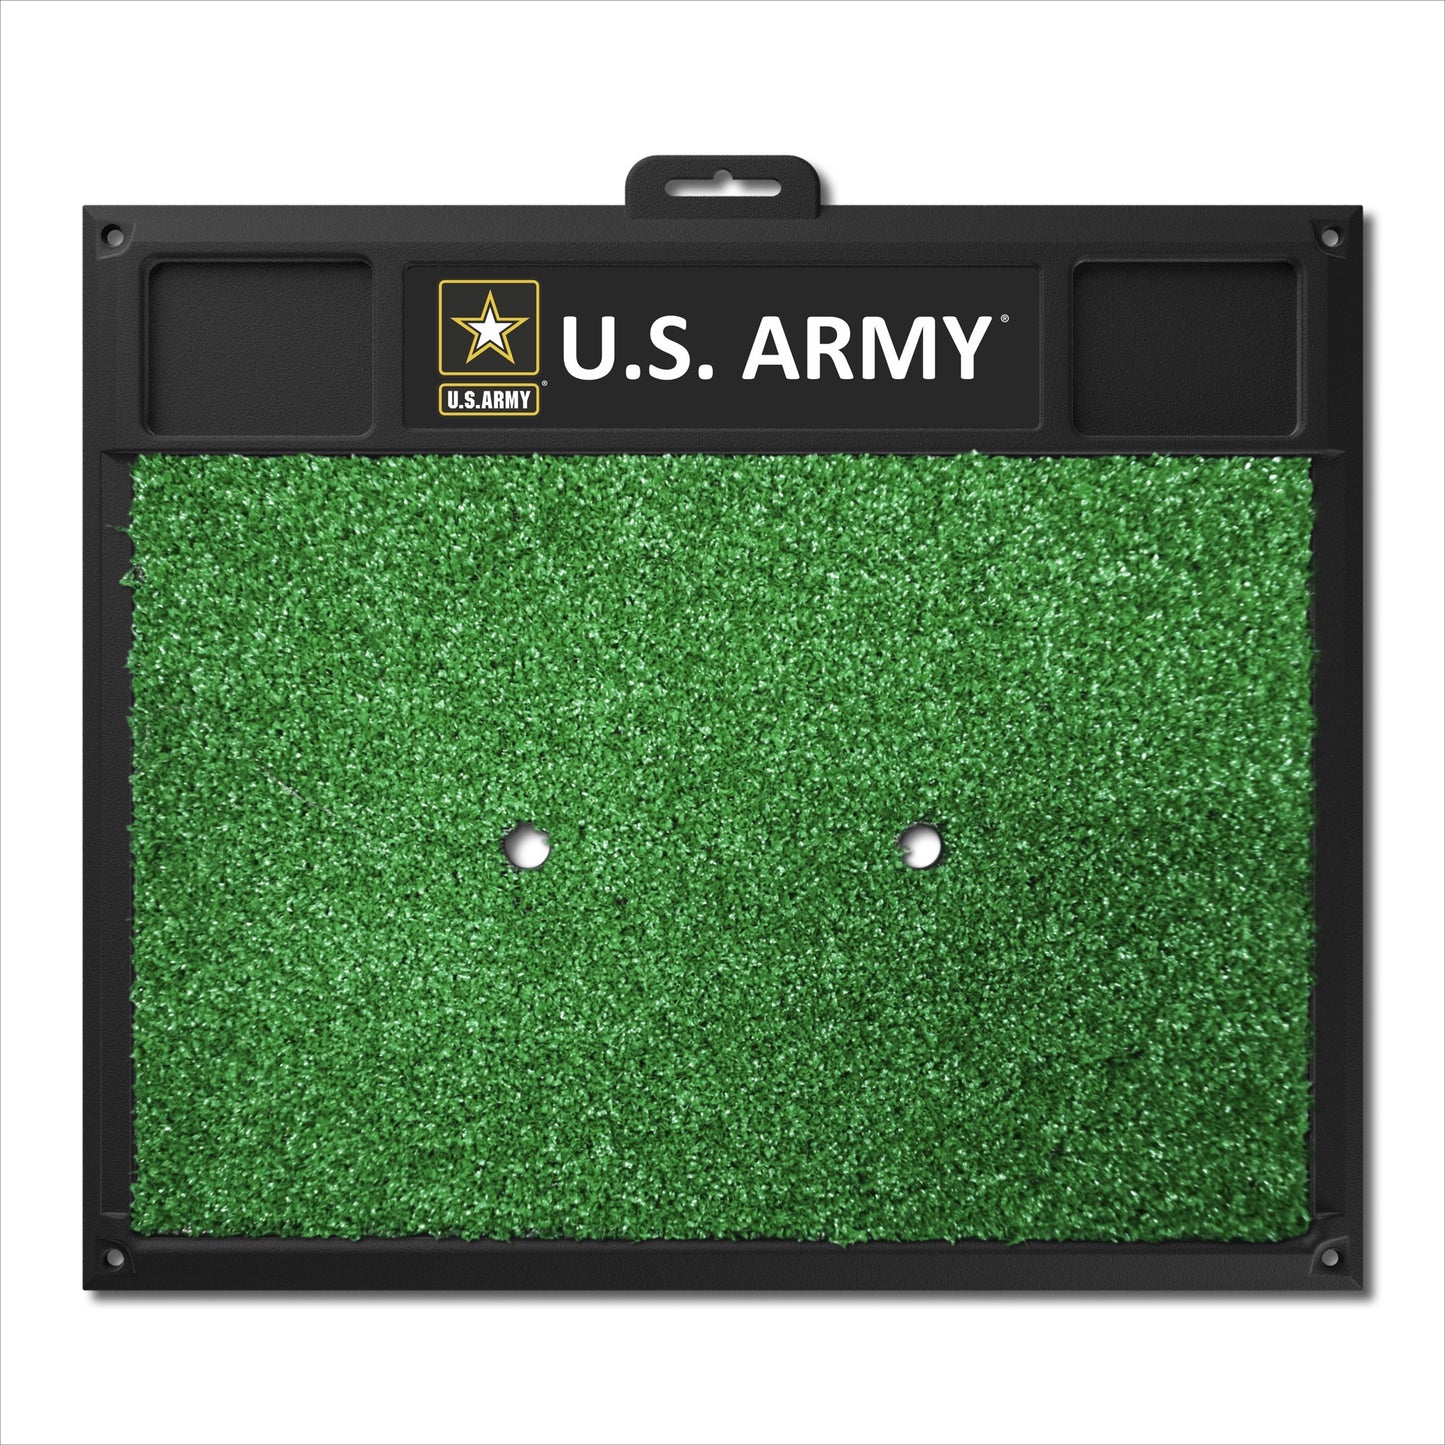 U.S. Army Golf Hitting Mat by Fanmats